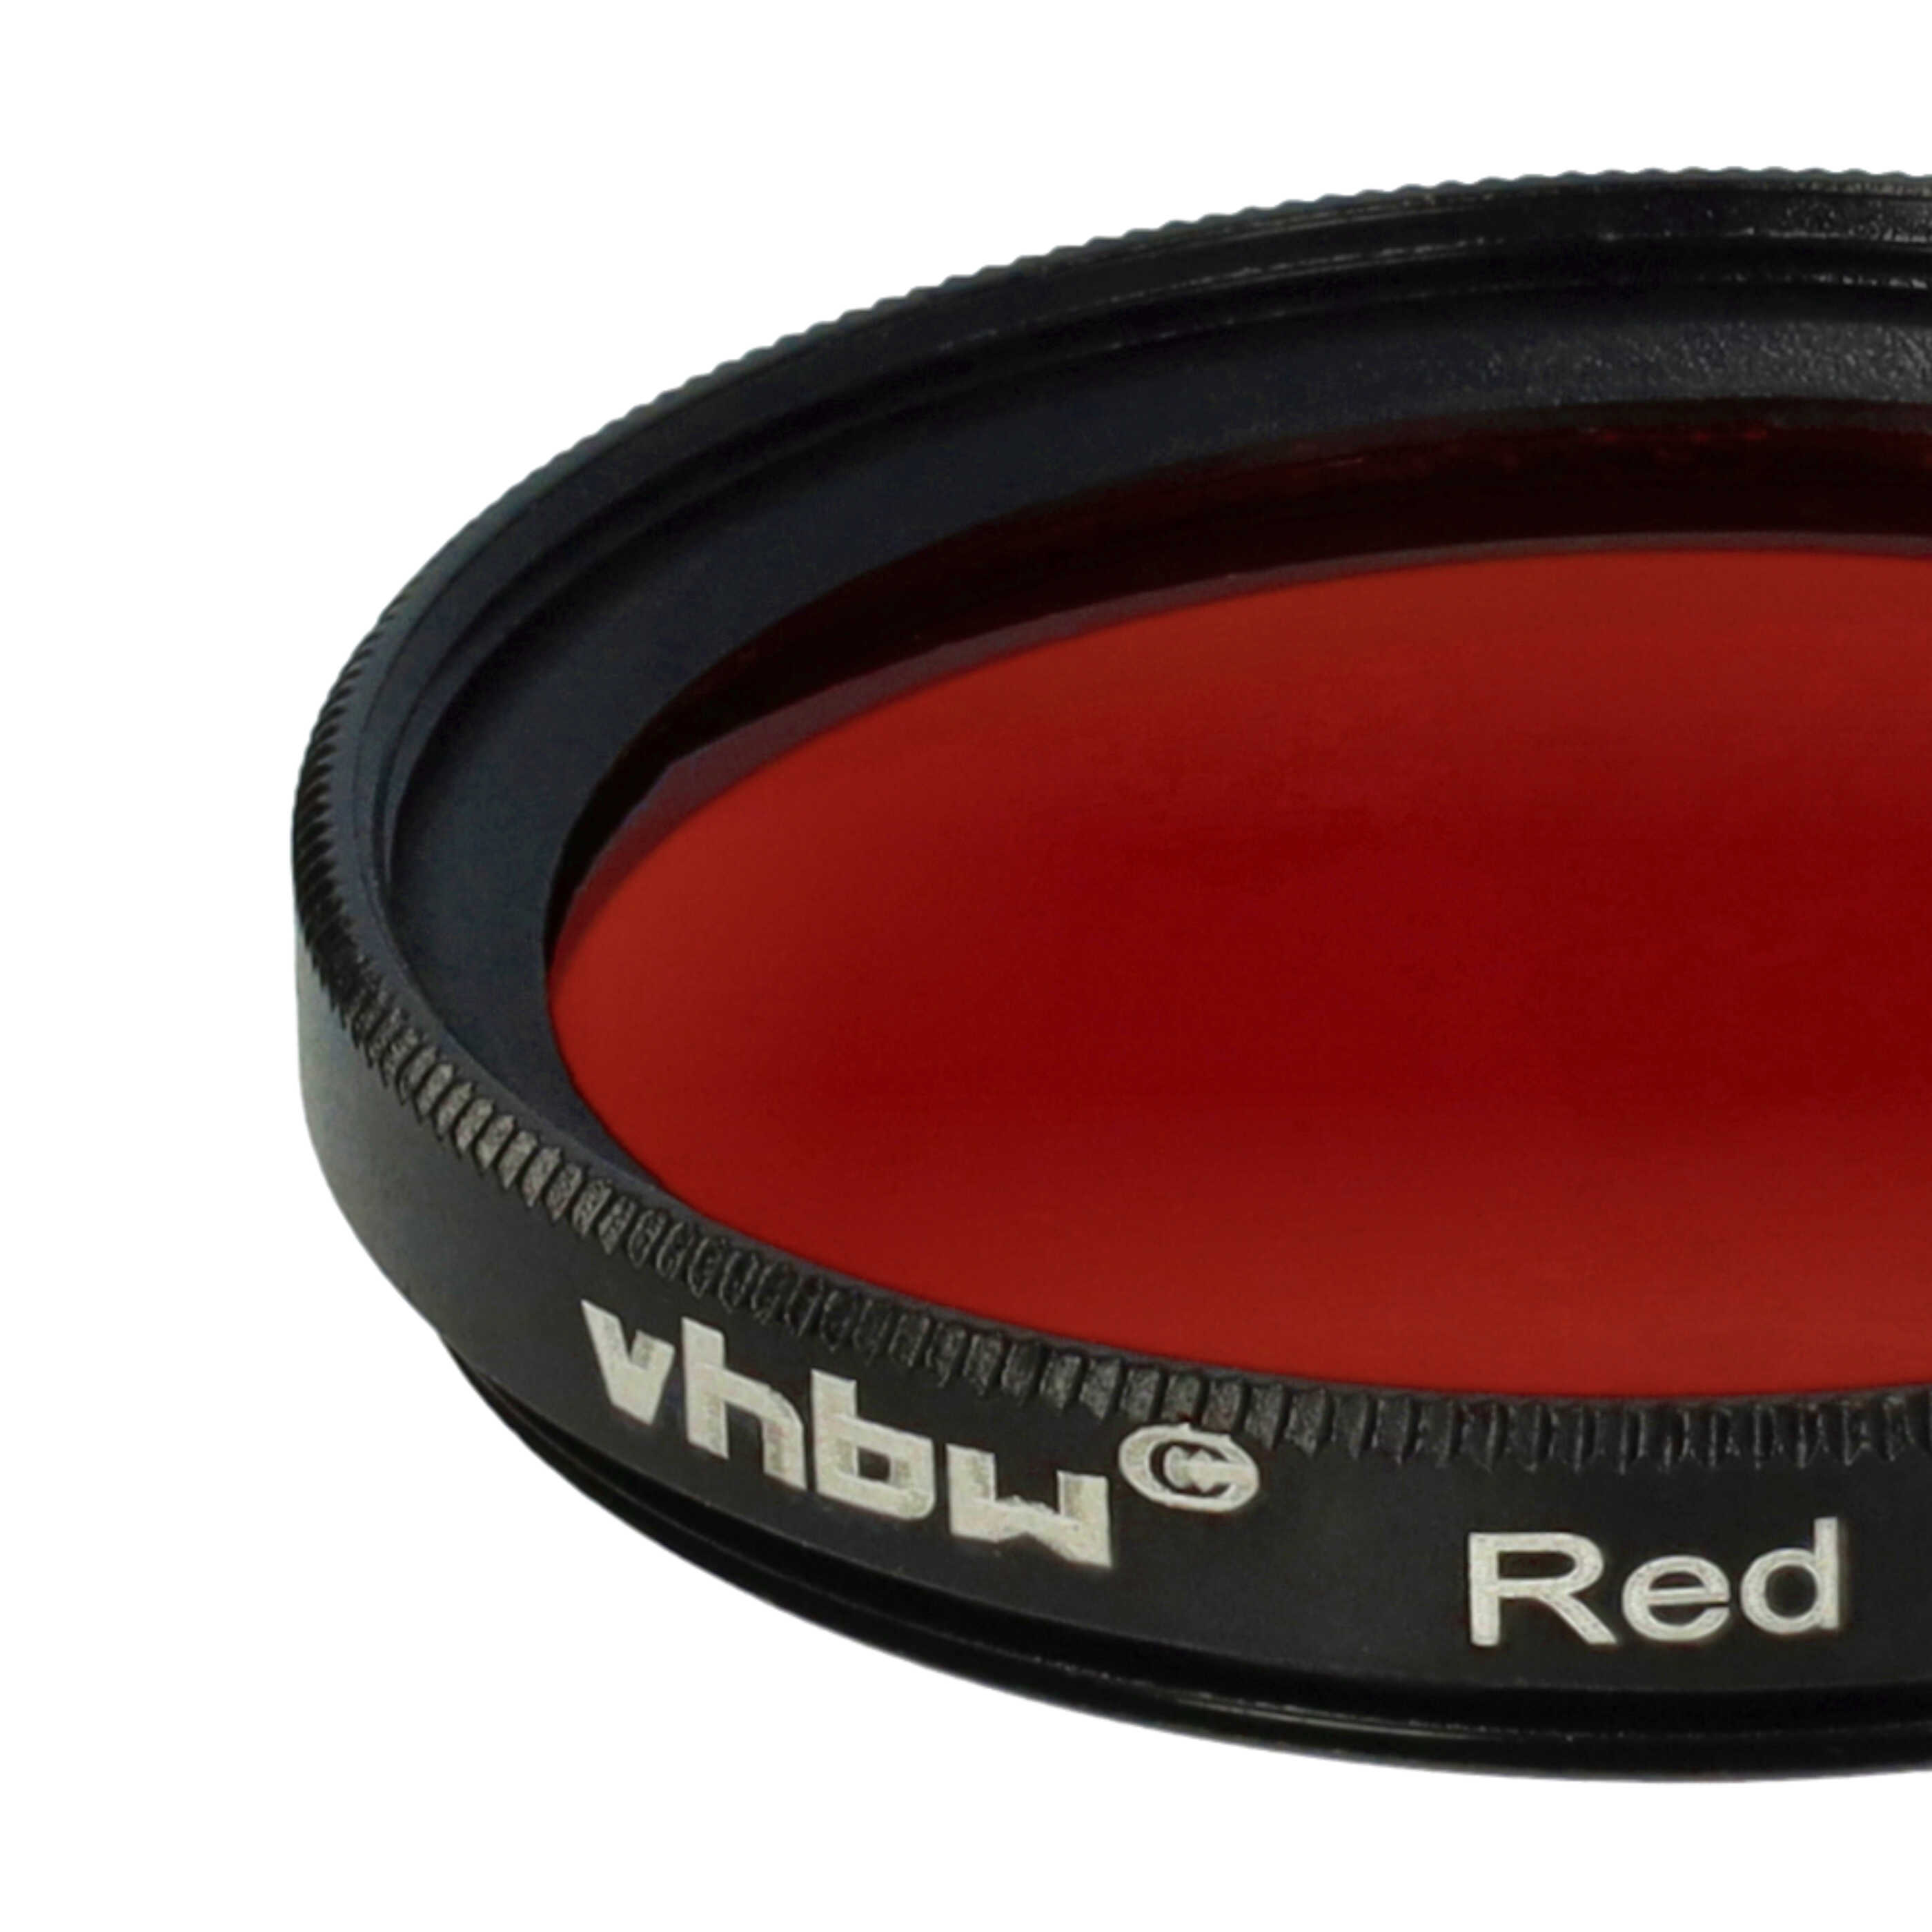 Farbfilter rot passend für Kamera Objektive mit 37 mm Filtergewinde - Rotfilter